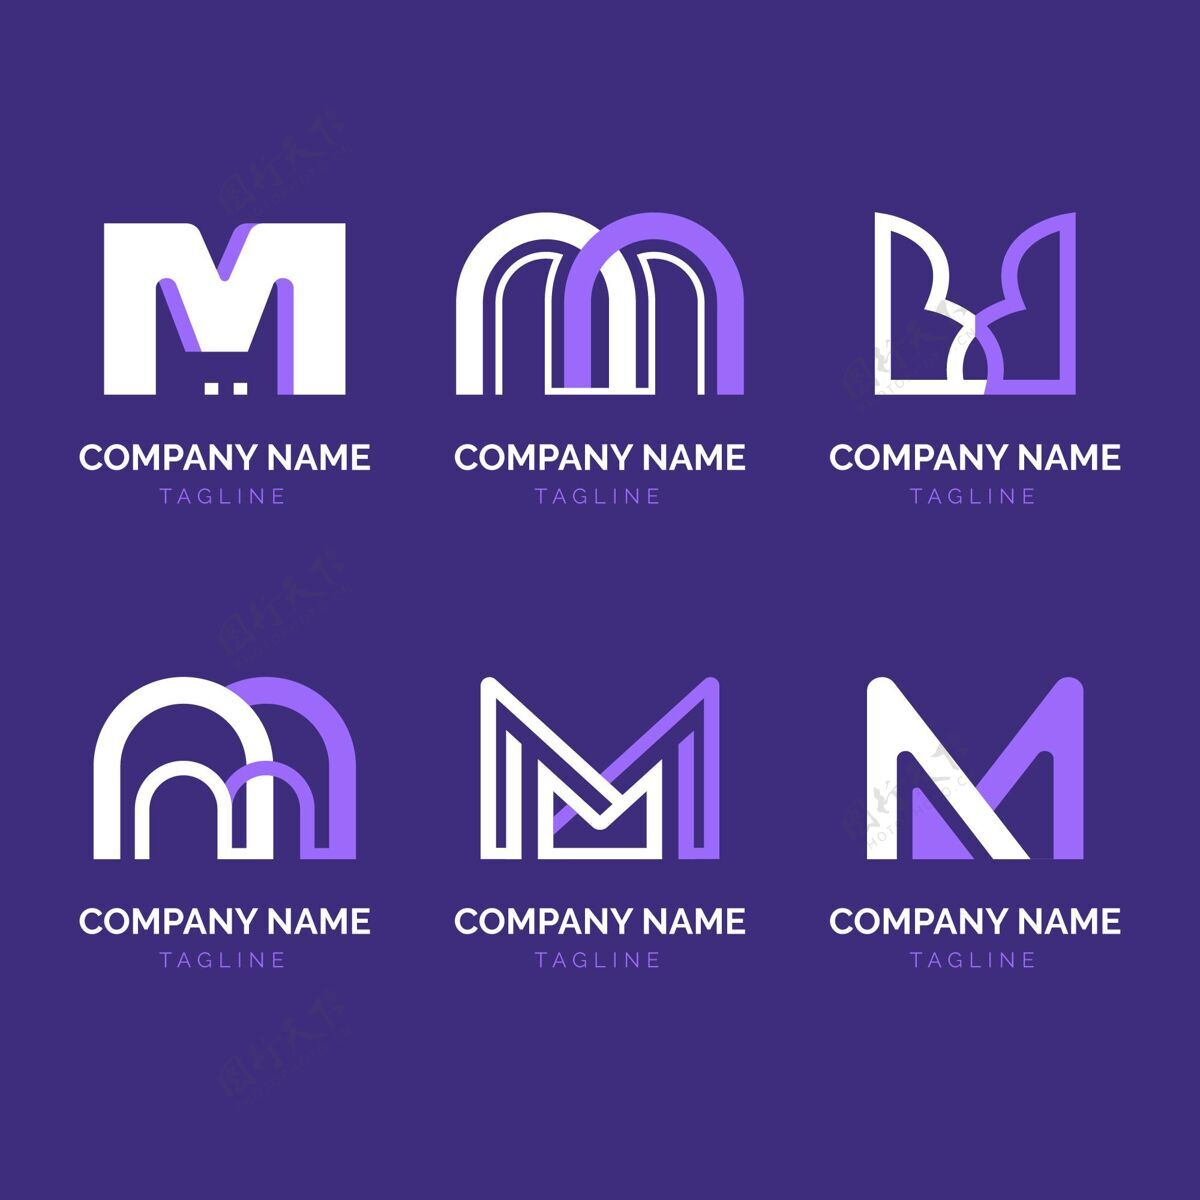 商业标志一套平面m标志模板标识M标志标志